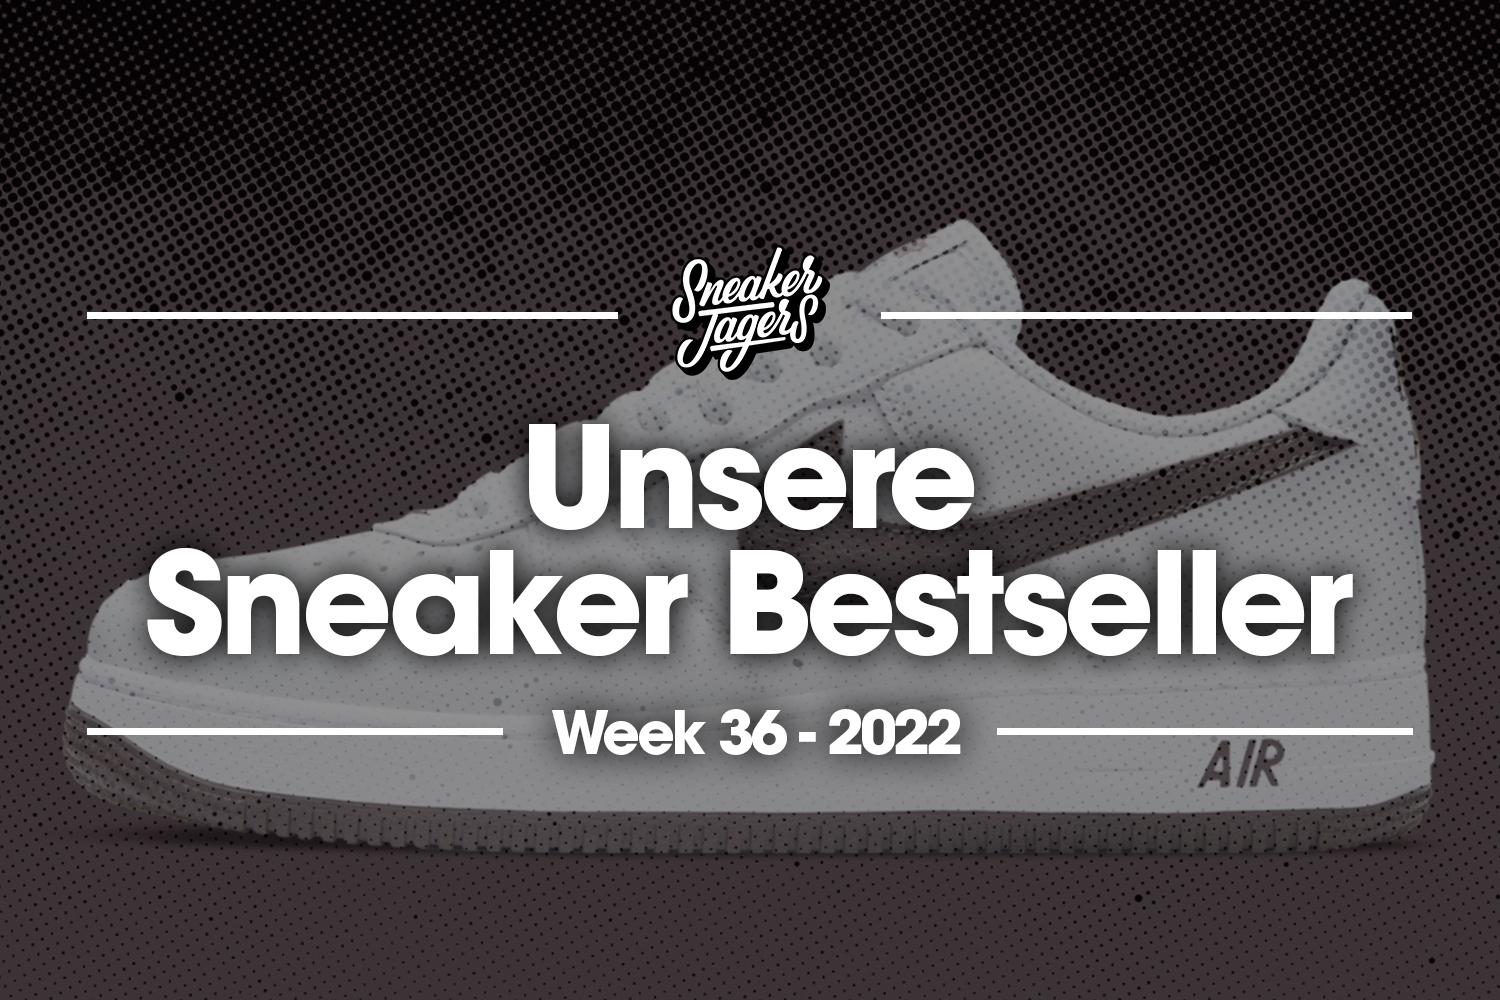 Unsere Sneaker Bestseller - Woche 36 - Das ist im Trend